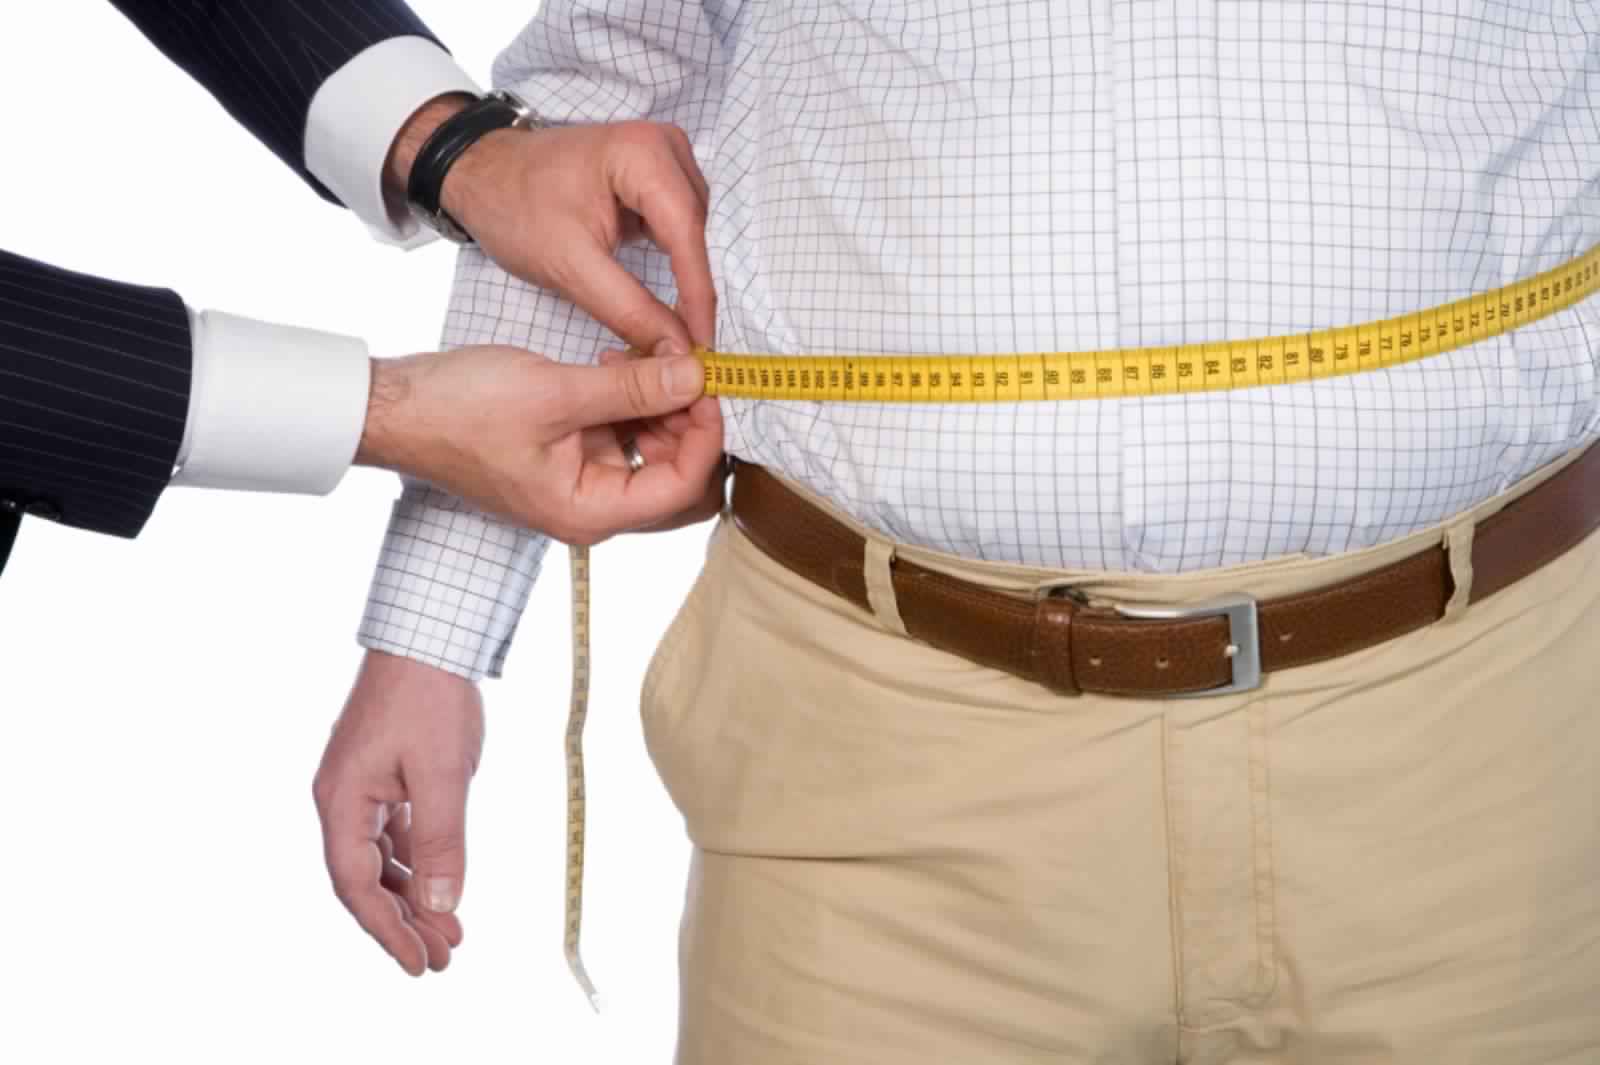 مقال - أسباب "غريبة" تؤدي إلى زيادة الوزن